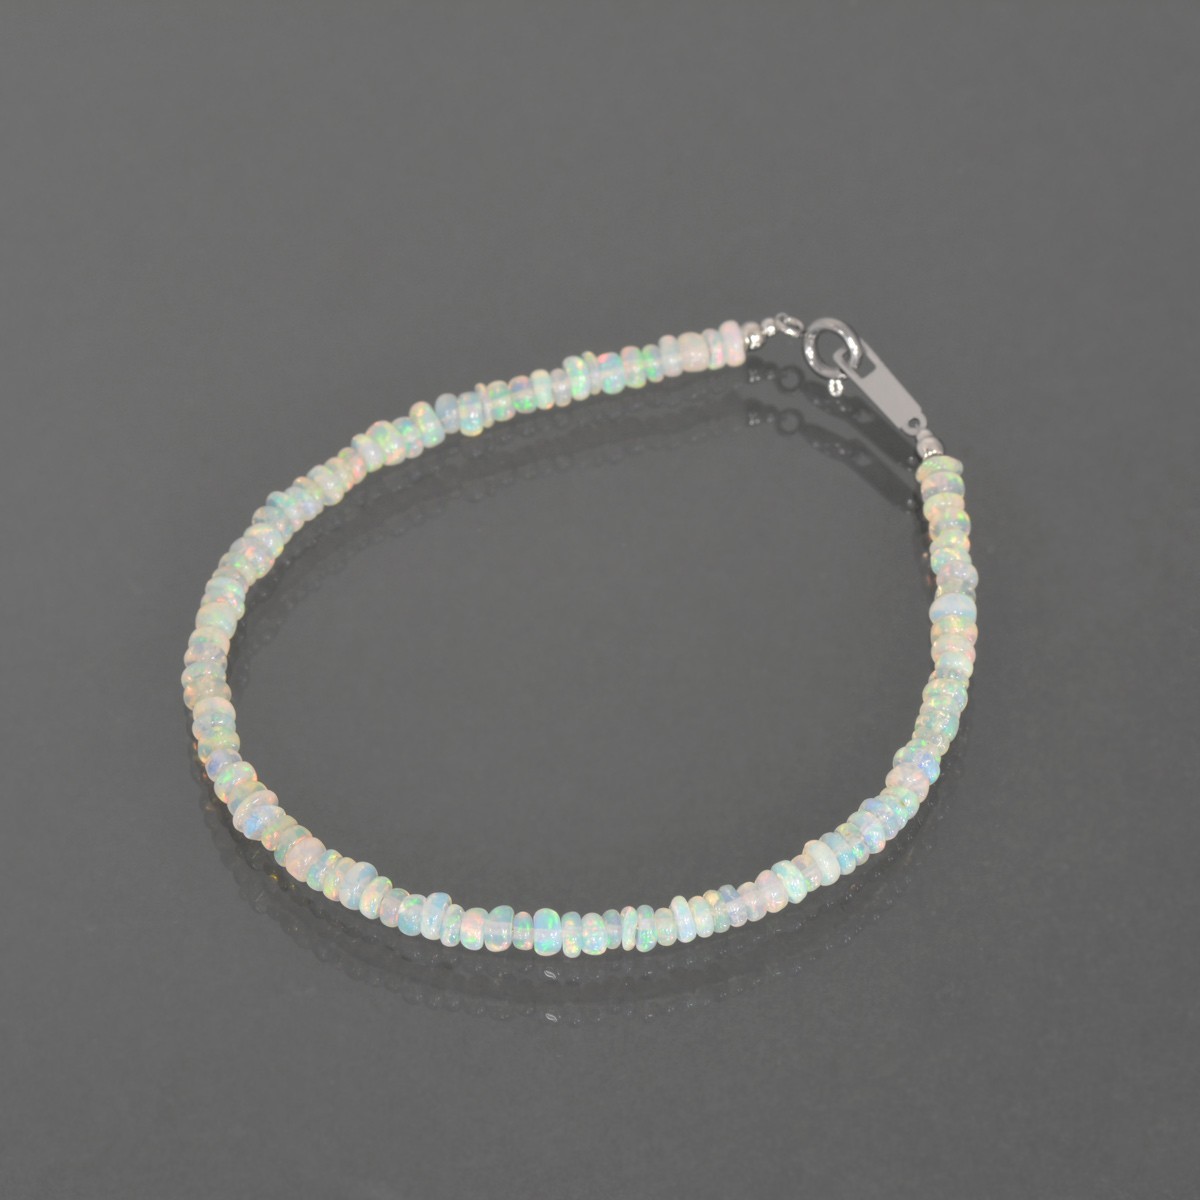 天然石 ブレスレット ぼたん型のオパールを使用した数珠ブレスレット 直径3.2mm 幅1.5mm｜パワーストーン アクセサリー レディース メンズ